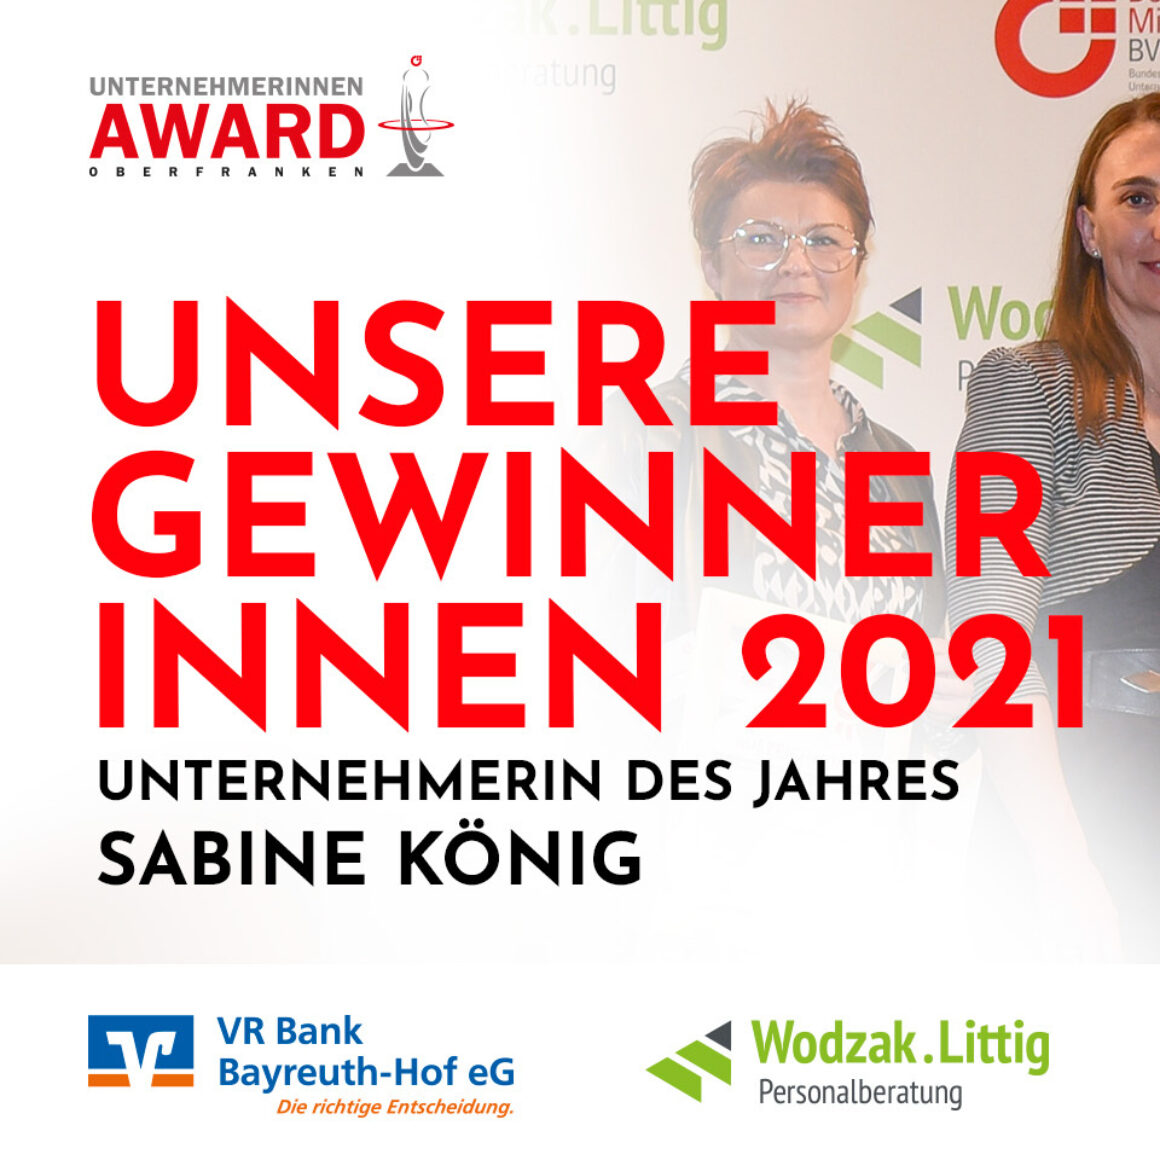 Unternehmerin des Jahres 2021 Oberfranken - Sabine König (Visit Public Health GmbH & Co. KG)